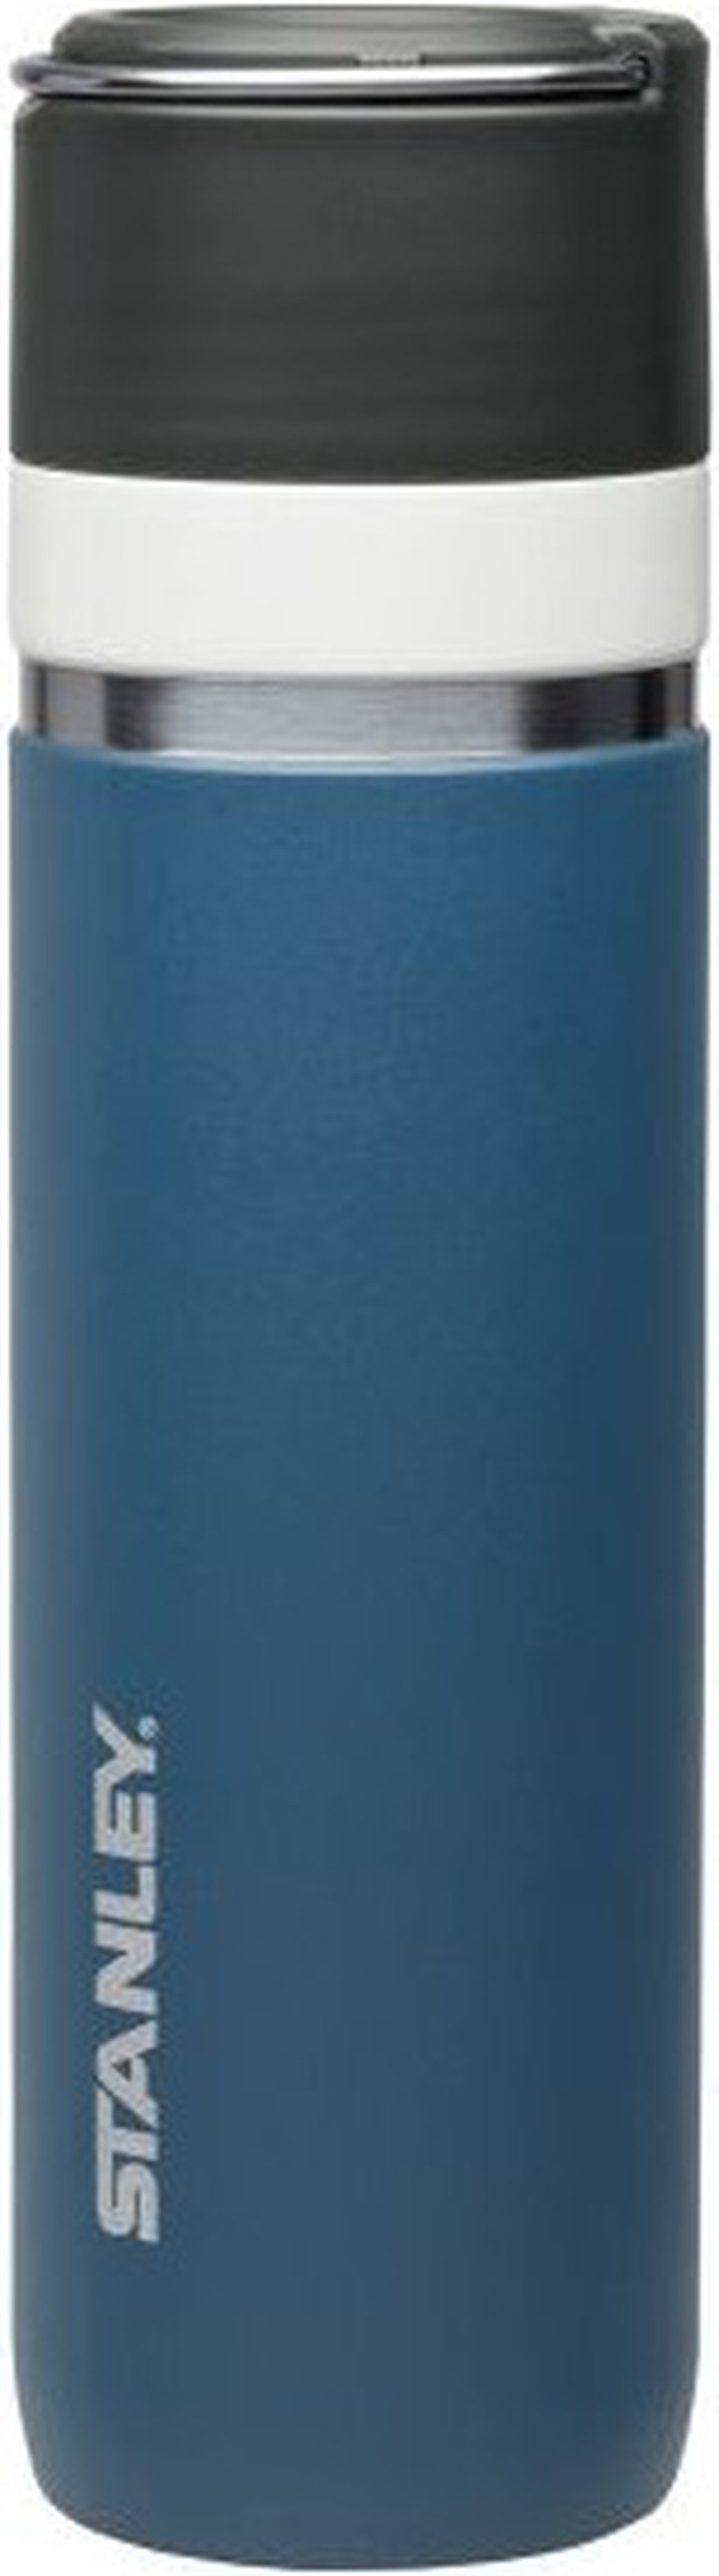 Термокружка Stanley Ceramivac (0,7 литра) синяя фото